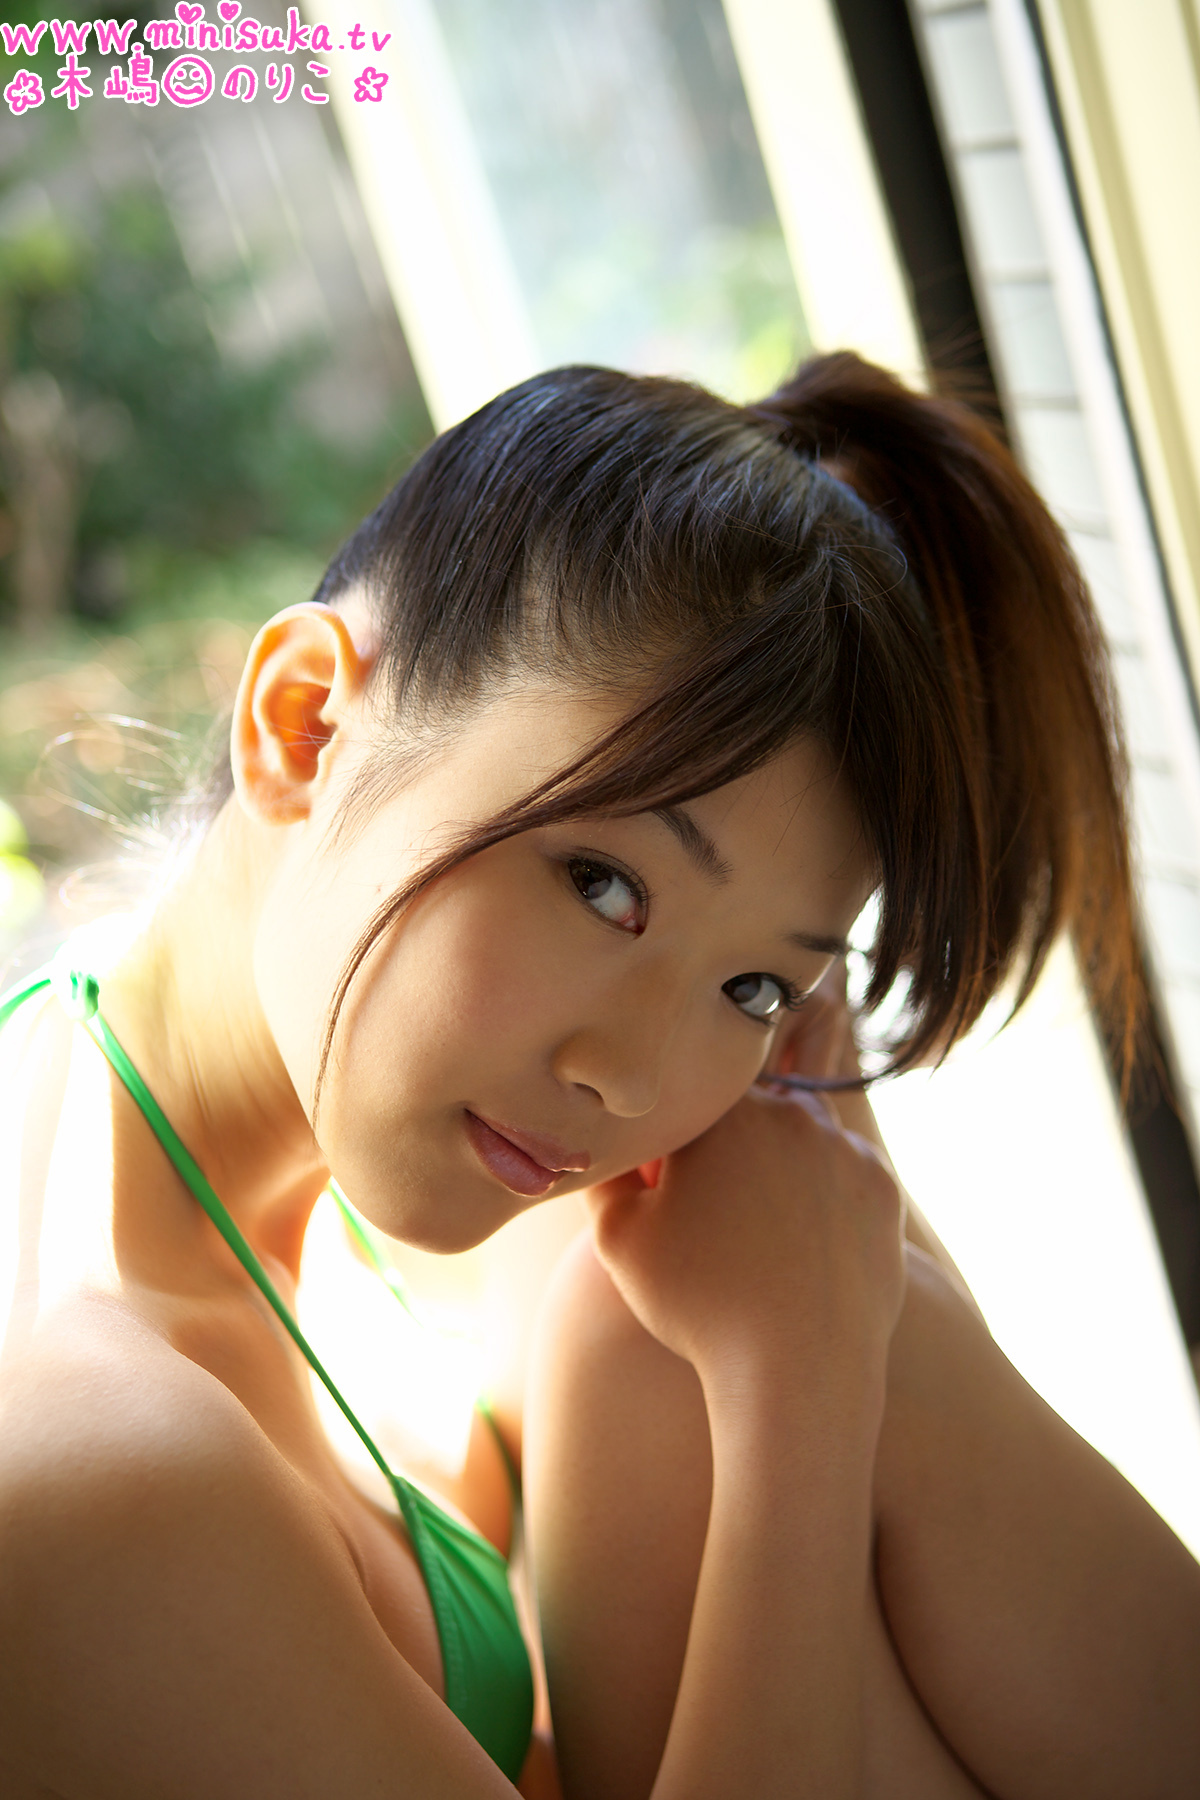 木嶋のりこ [Minisuka.tv] 现役女子高生 Noriko Kijima 日本美女图片